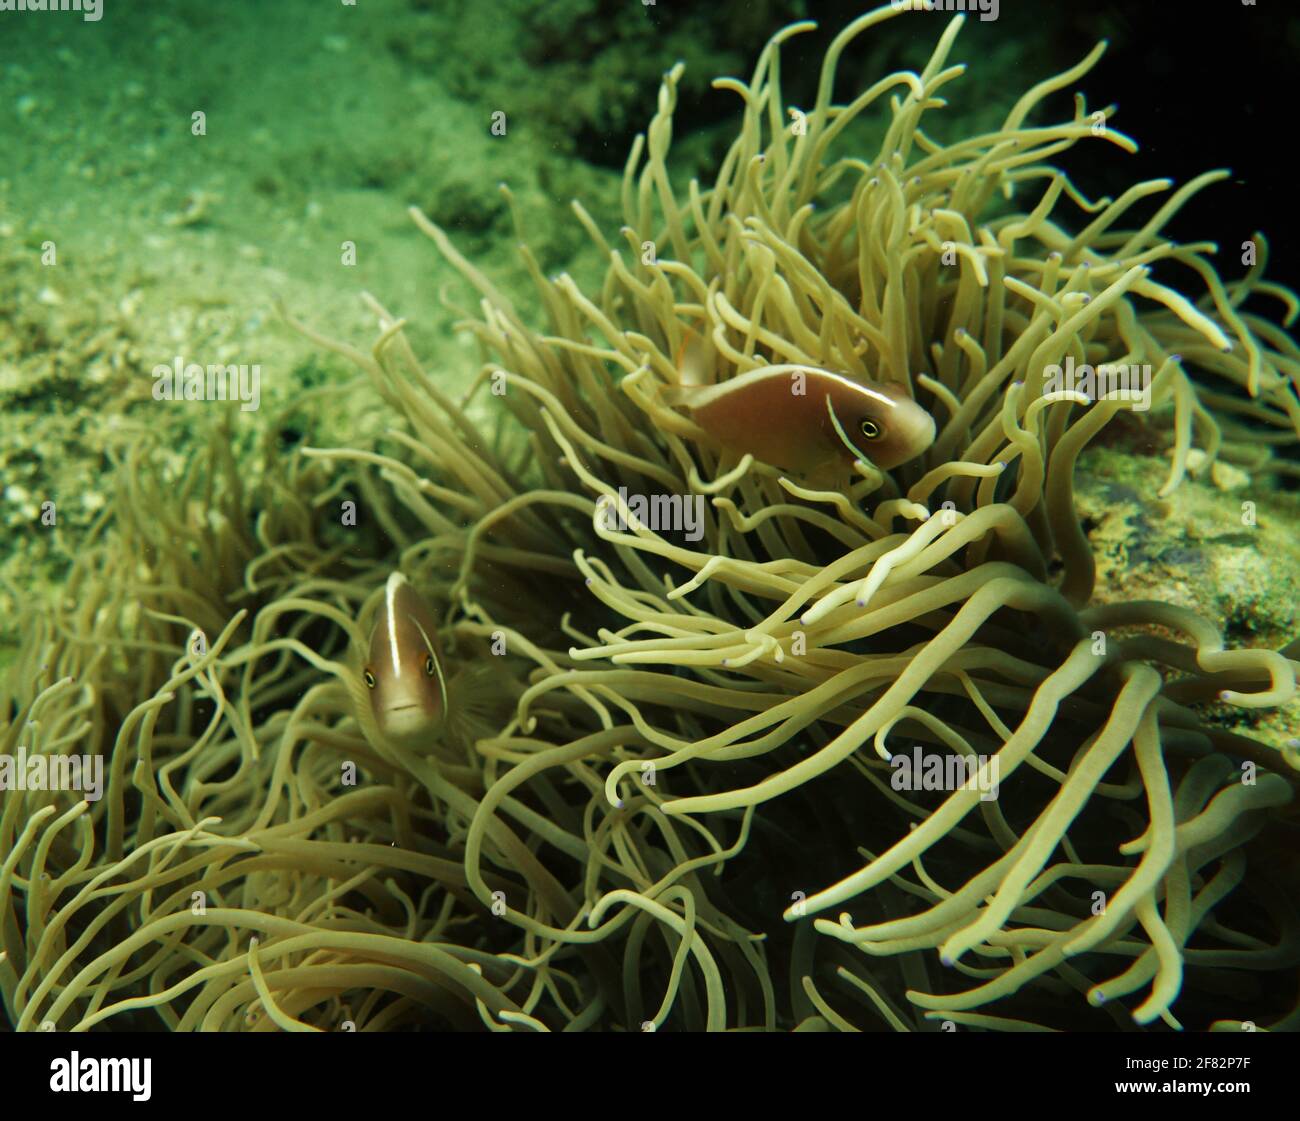 Pesce anemone che tiene al sicuro nel proprio anemone Foto Stock